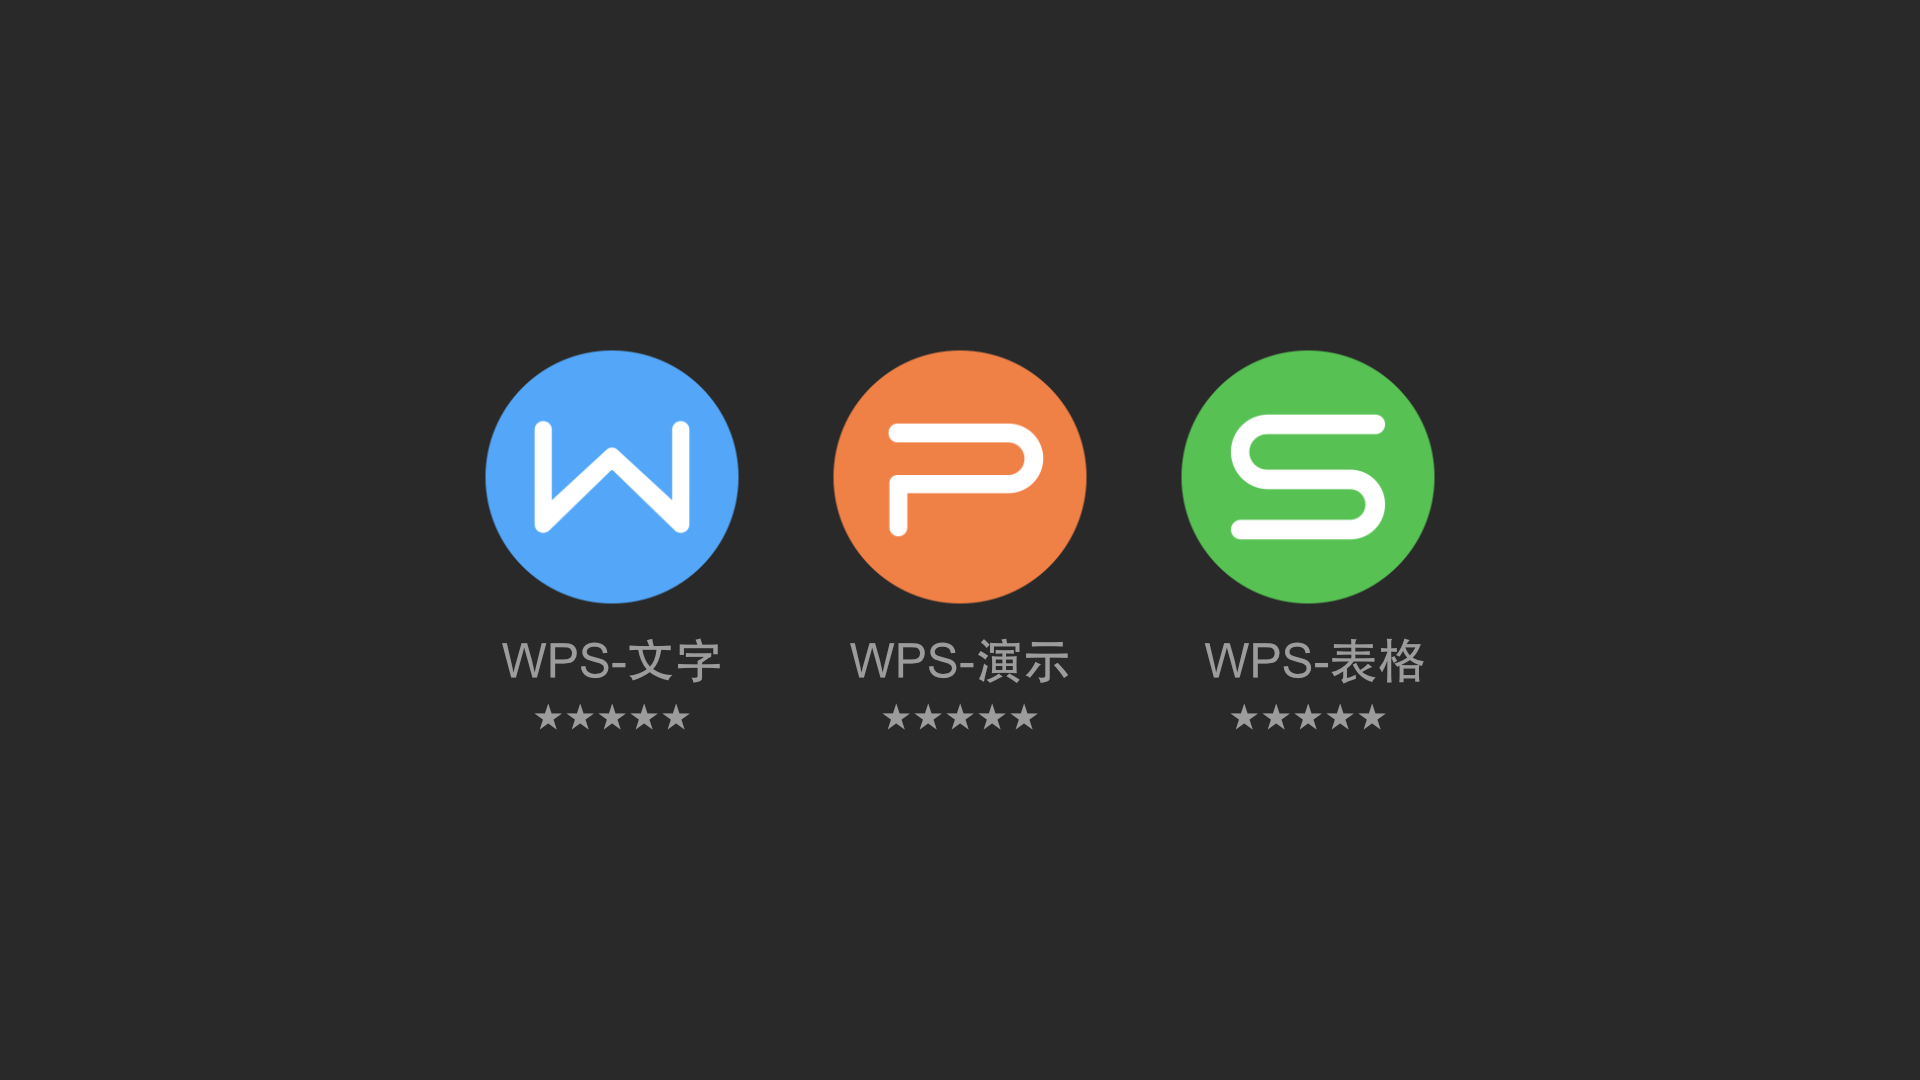 wps 2013 疯狂精简版 麻雀虽小，功能齐全 体积：29MB - 第1张